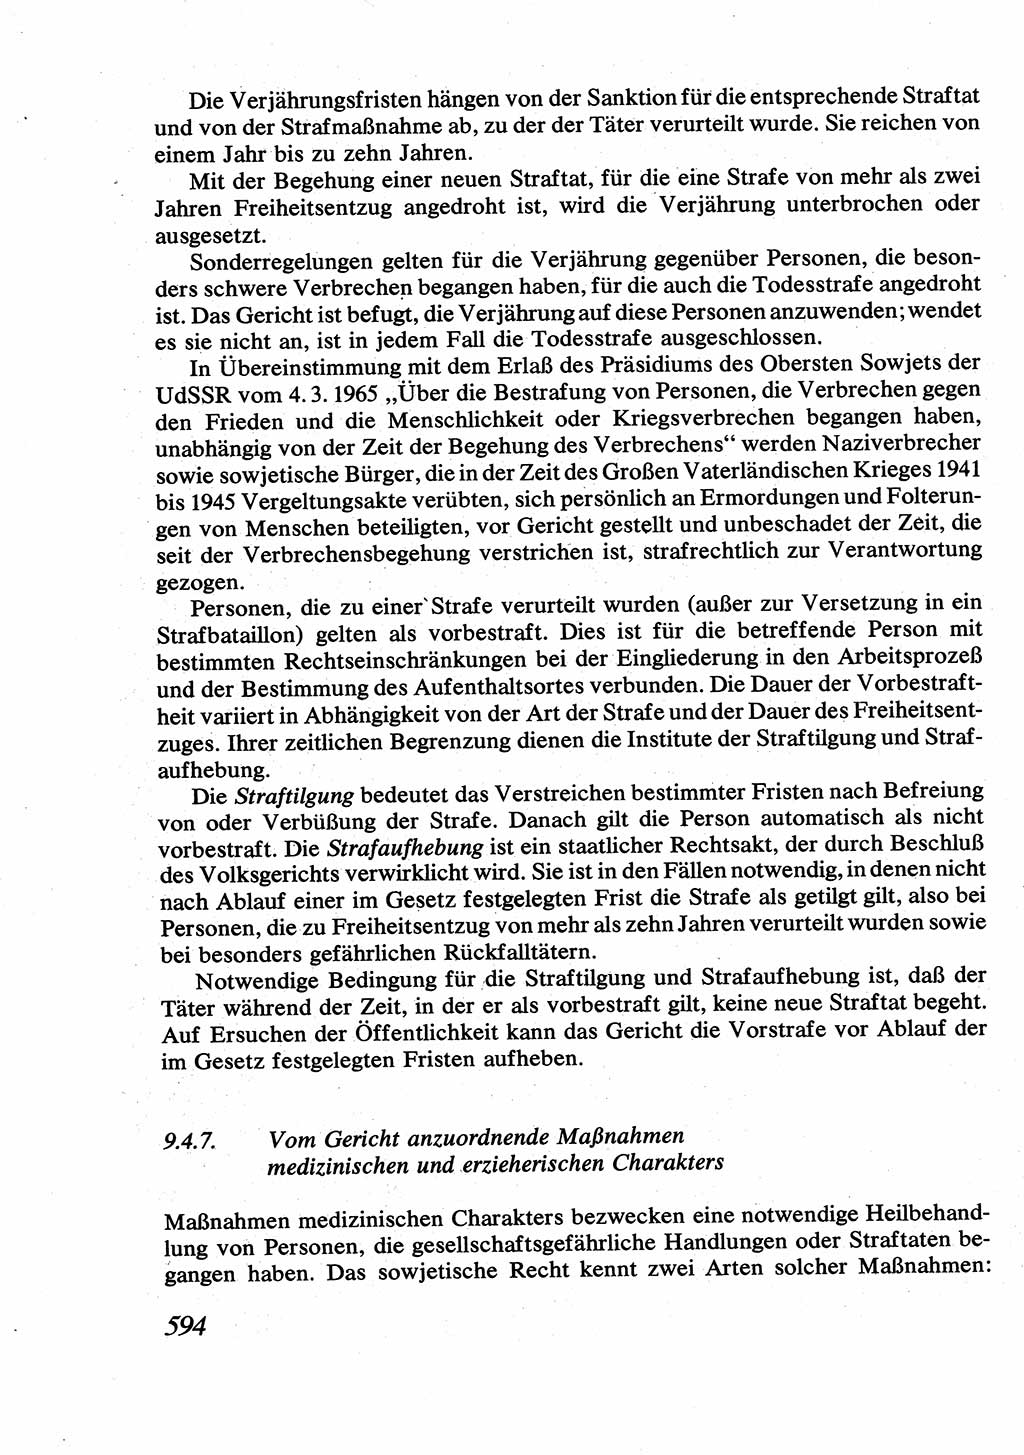 Strafrecht [Deutsche Demokratische Republik (DDR)], Allgemeiner Teil, Lehrbuch 1976, Seite 594 (Strafr. DDR AT Lb. 1976, S. 594)